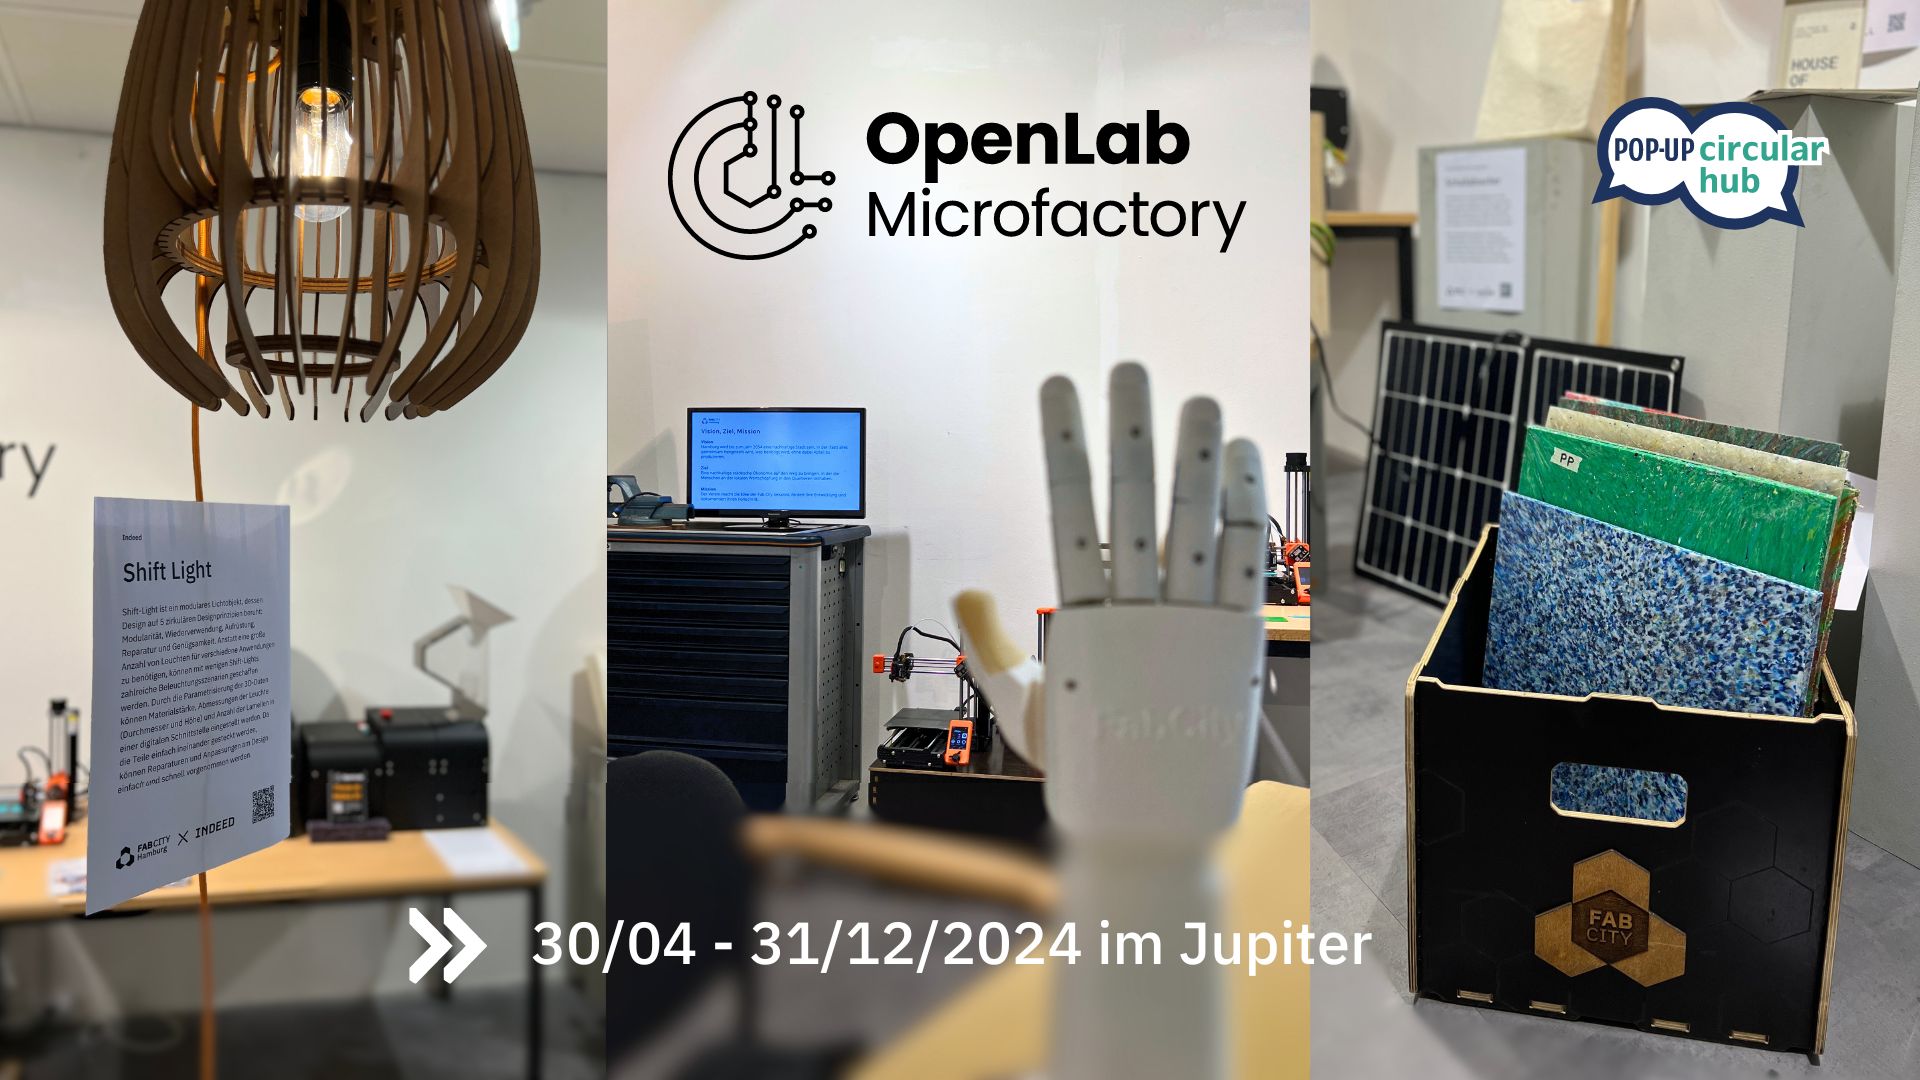 Du betrachtest gerade Die OpenLab Microfactory im Pop-Up Circular Hub